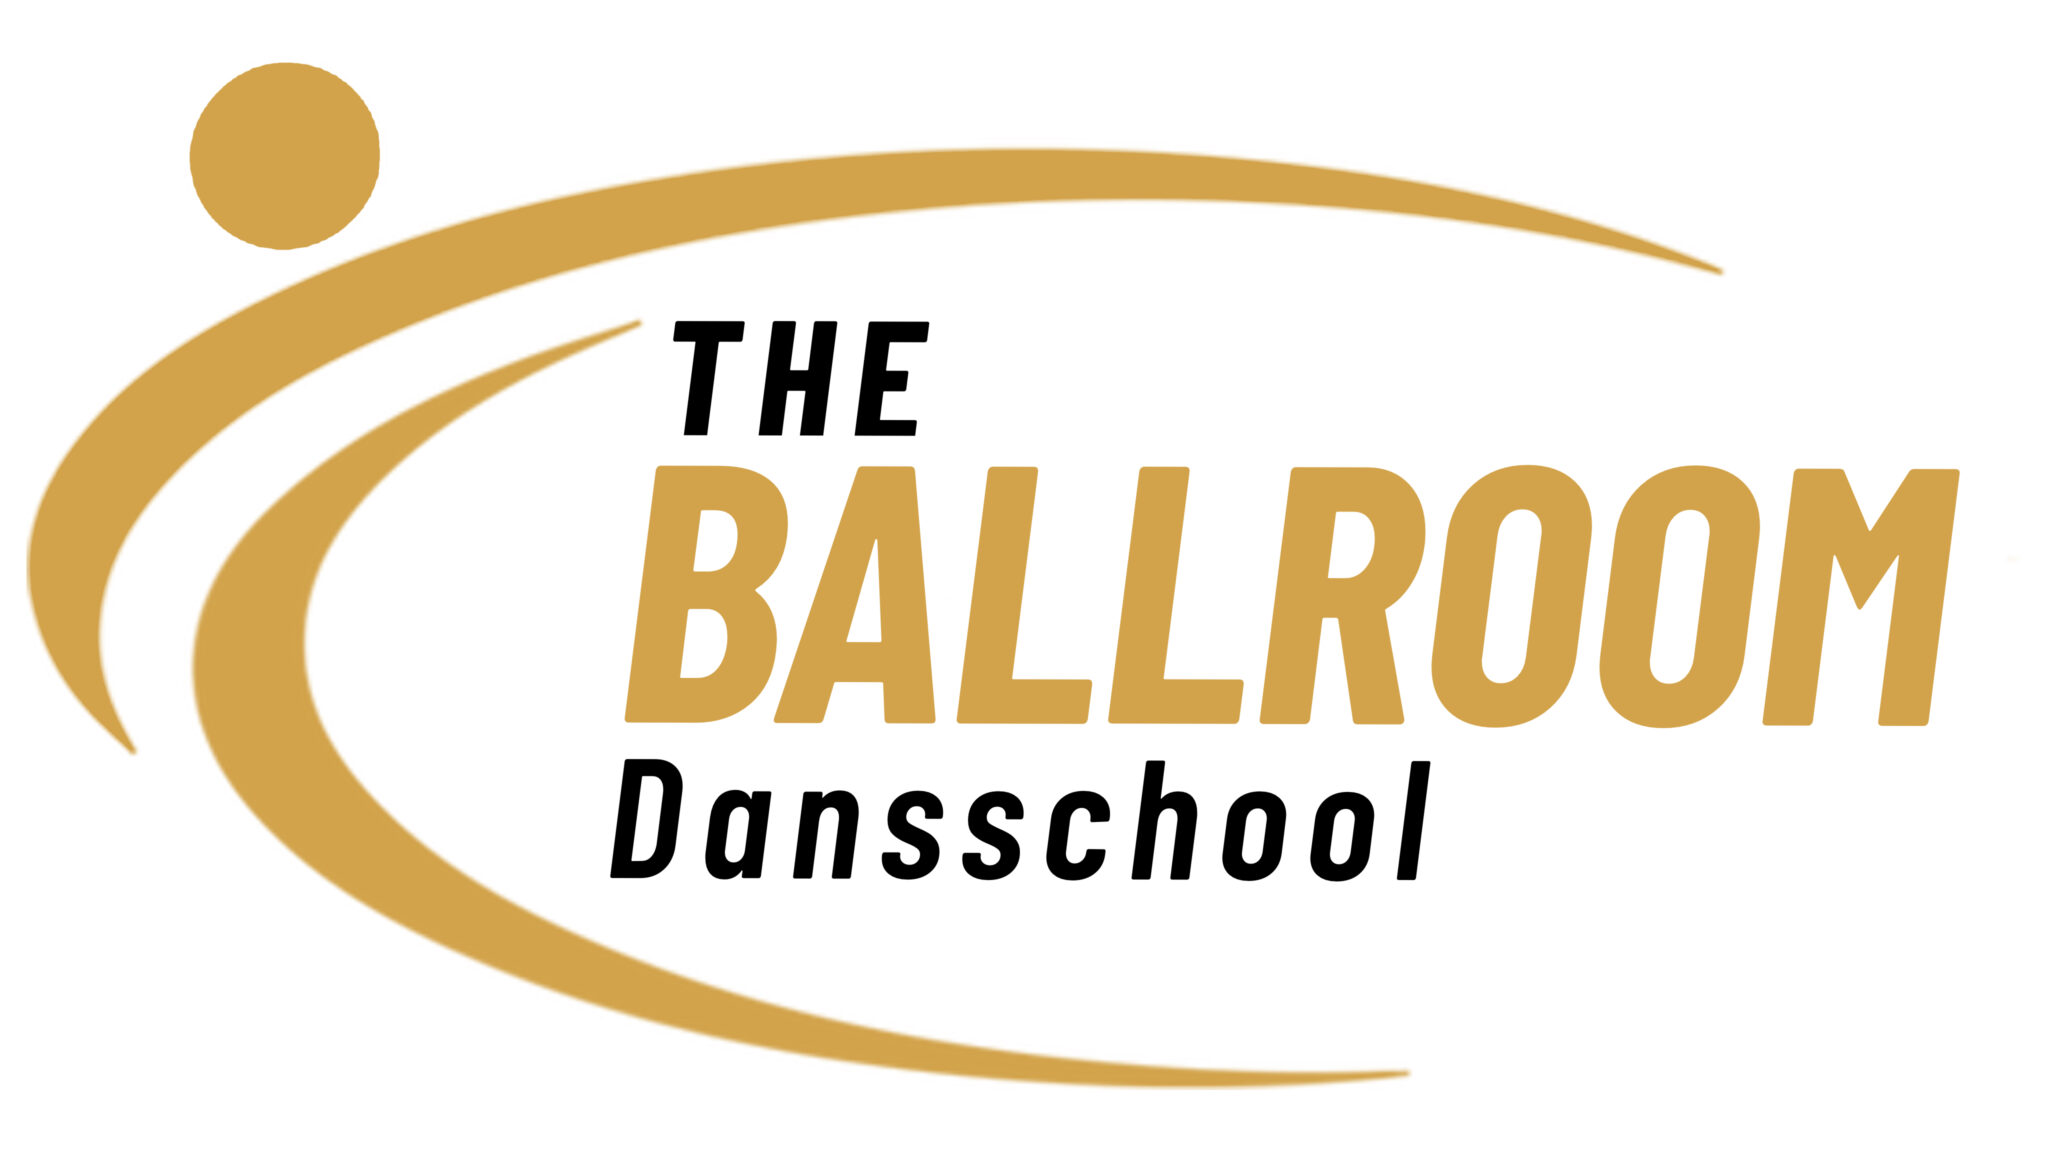 The Ballroom Dansschool